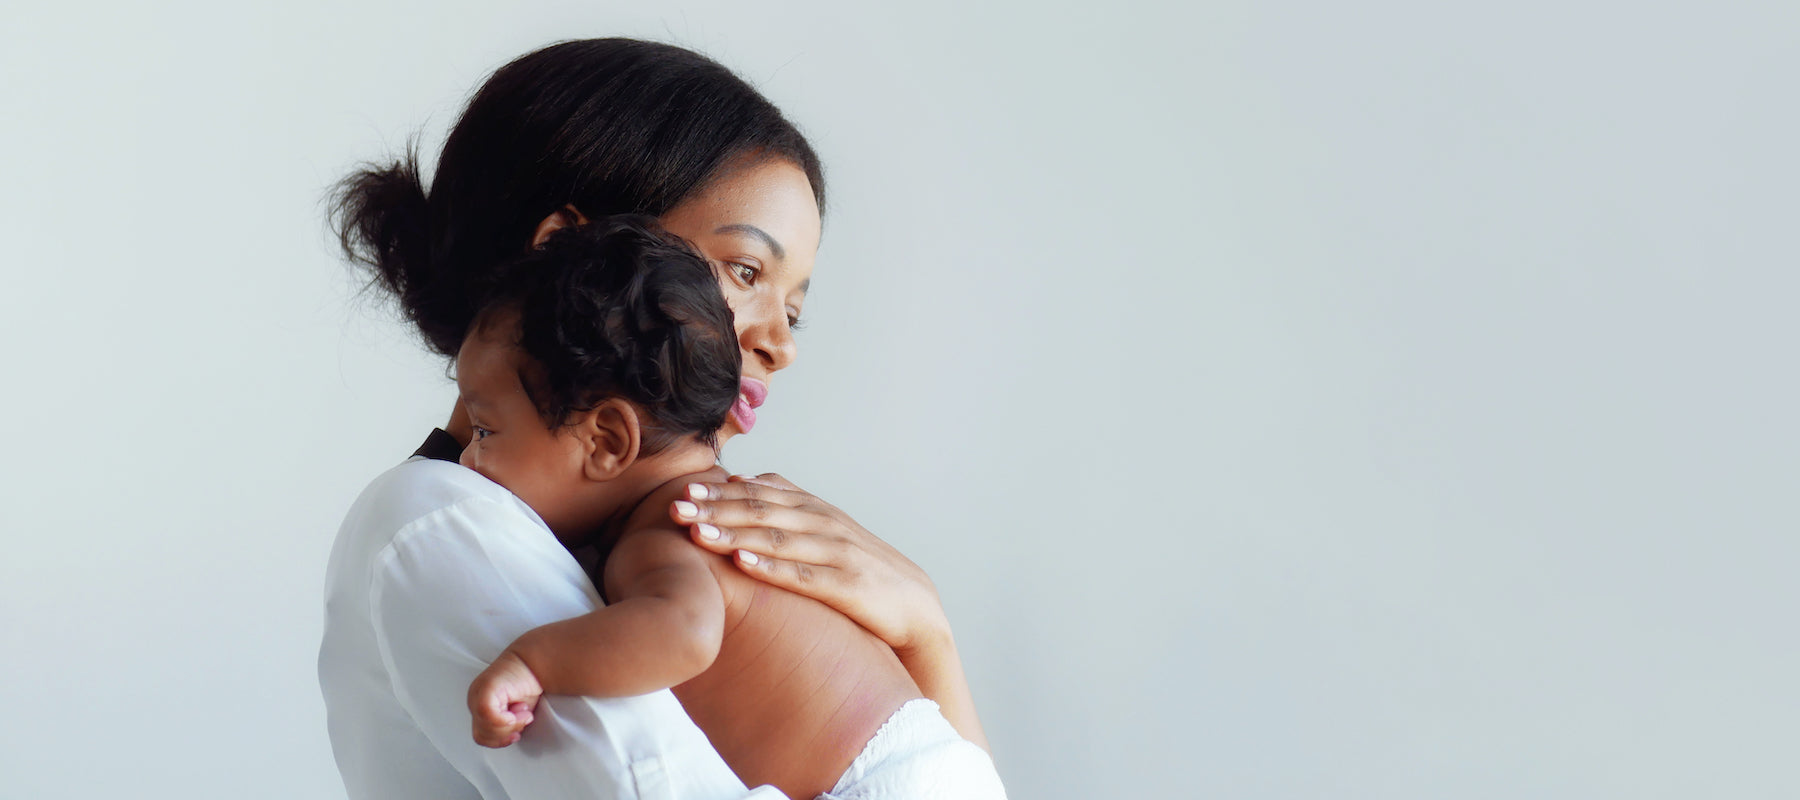 How to Handle Postpartum Mood Swings